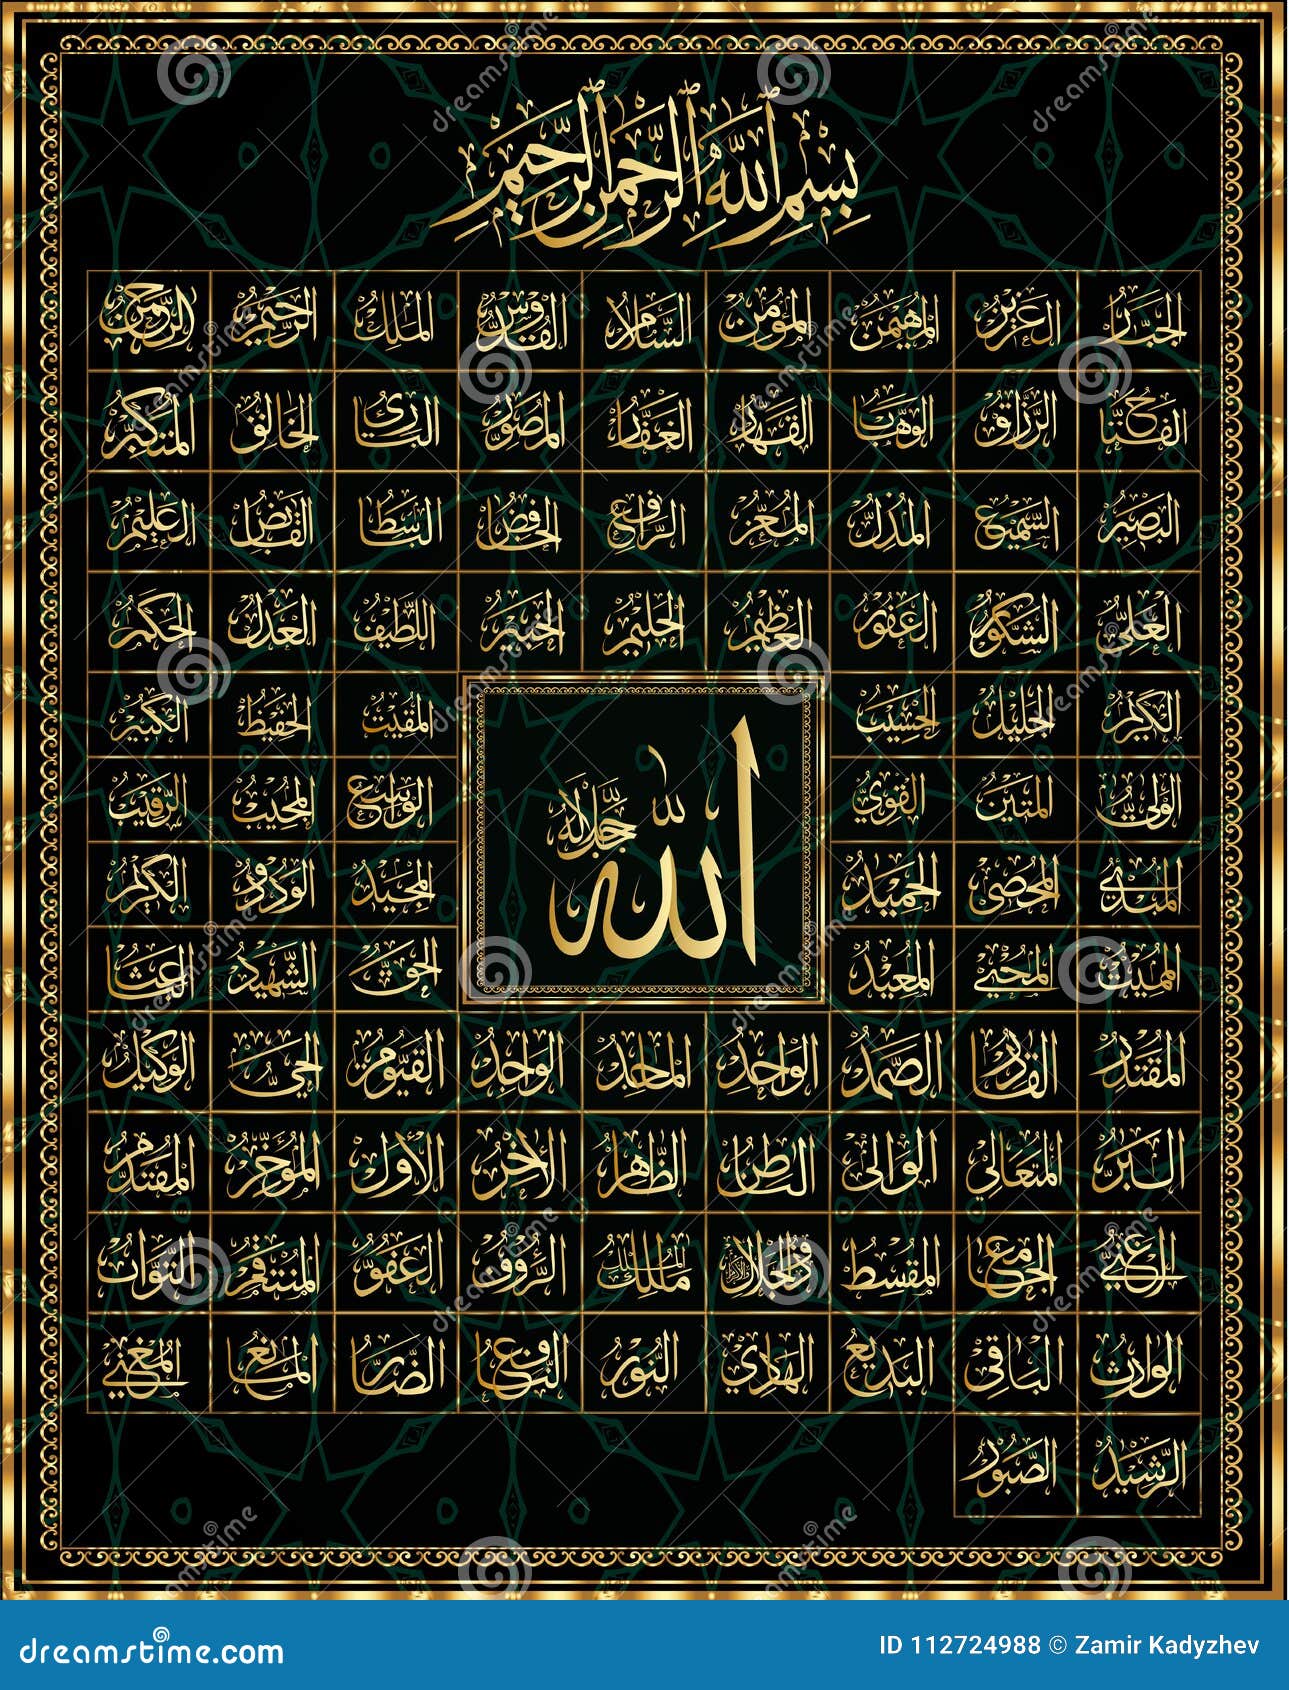 99 Names Of Allah Stock Illustration Illustration Of Kareem 112724988